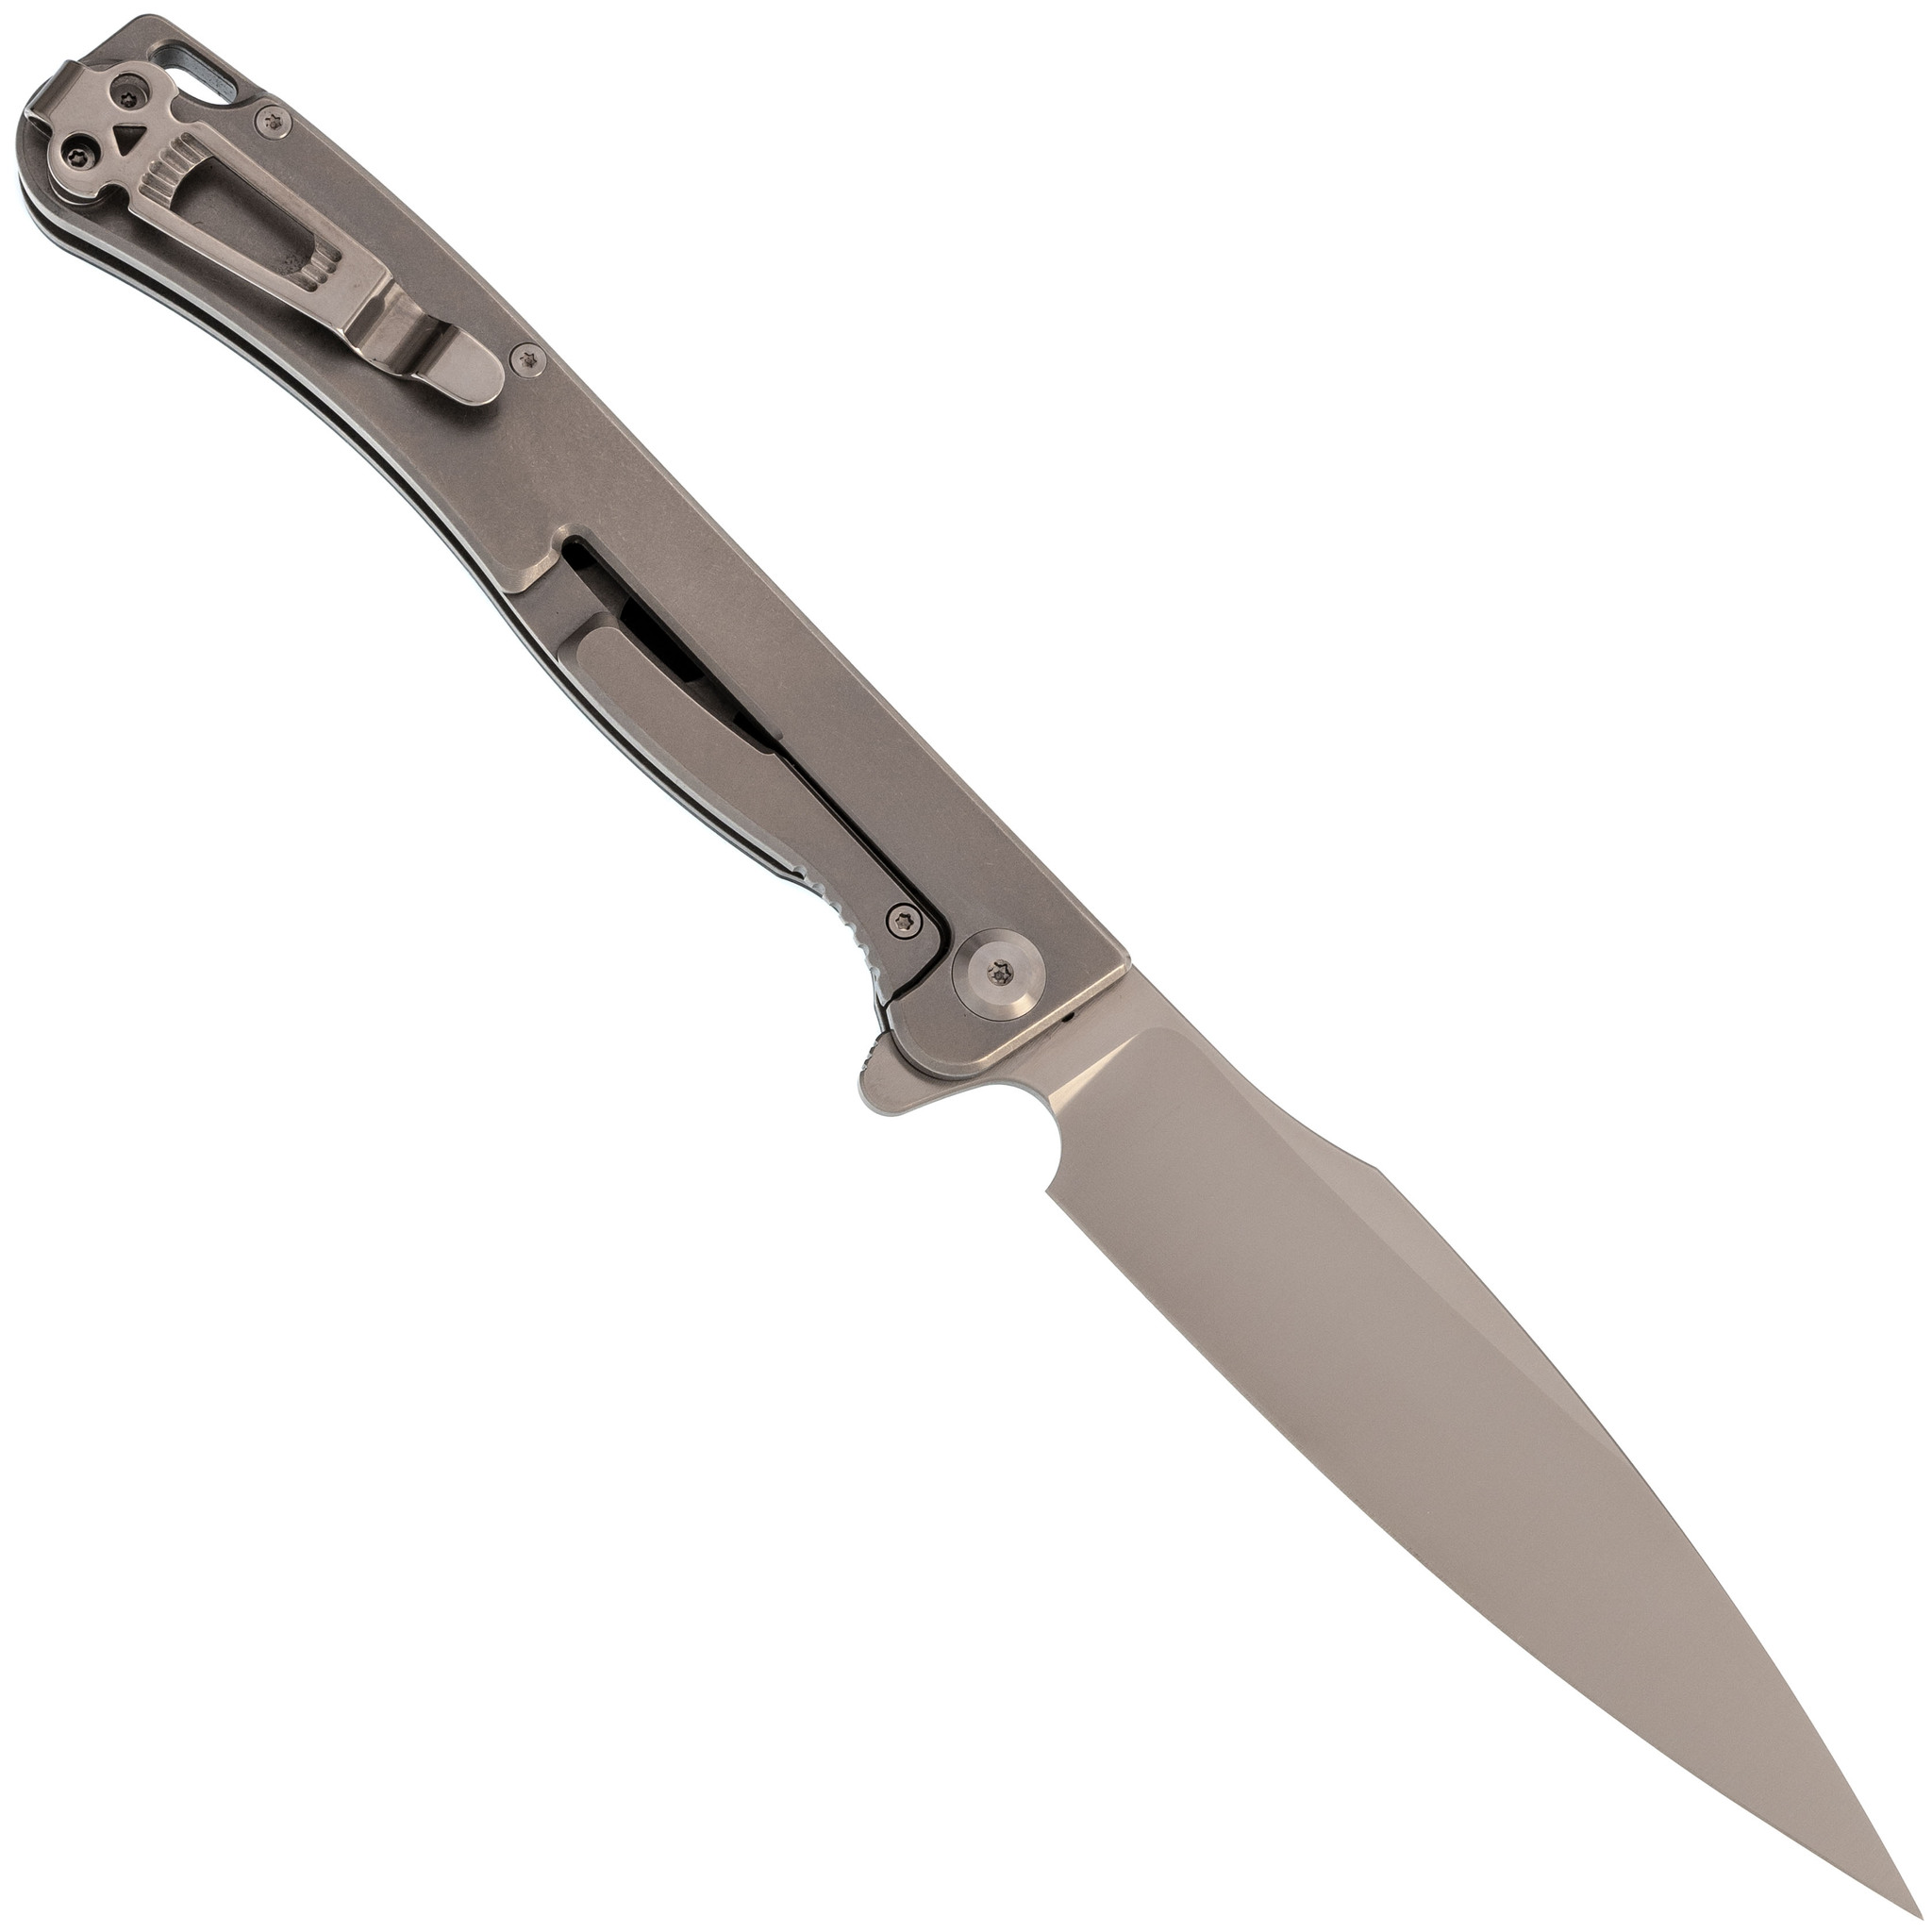 Складной нож Daggerr Condor Black Satin, сталь 154CM, рукоять G10 - фото 3